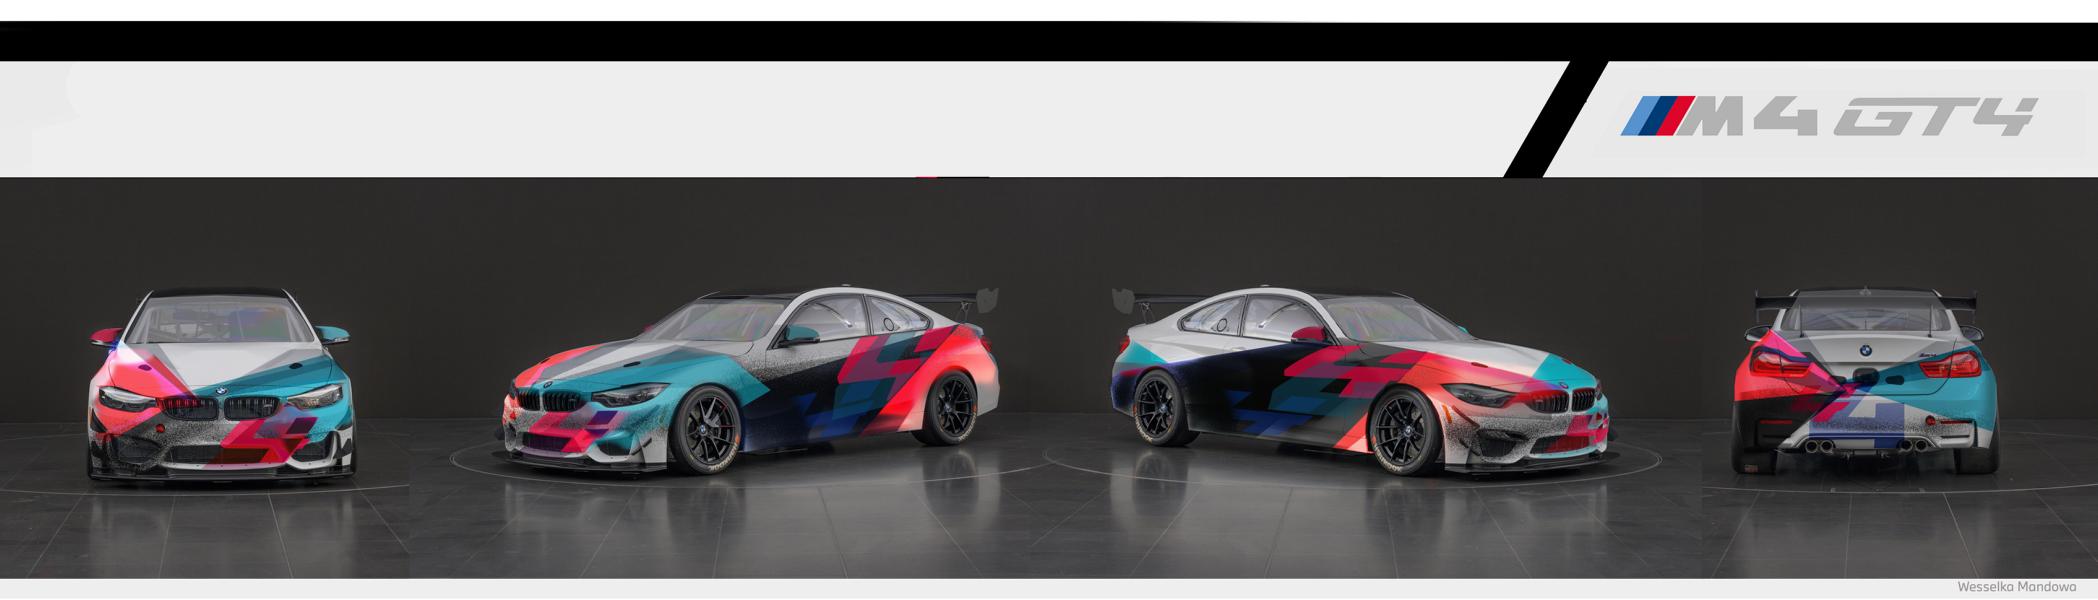 2021 BMW M4 GT4 vier exklusive Designs 1 2021 BMW M4 GT4 mit vier exklusiven neuen Designs!